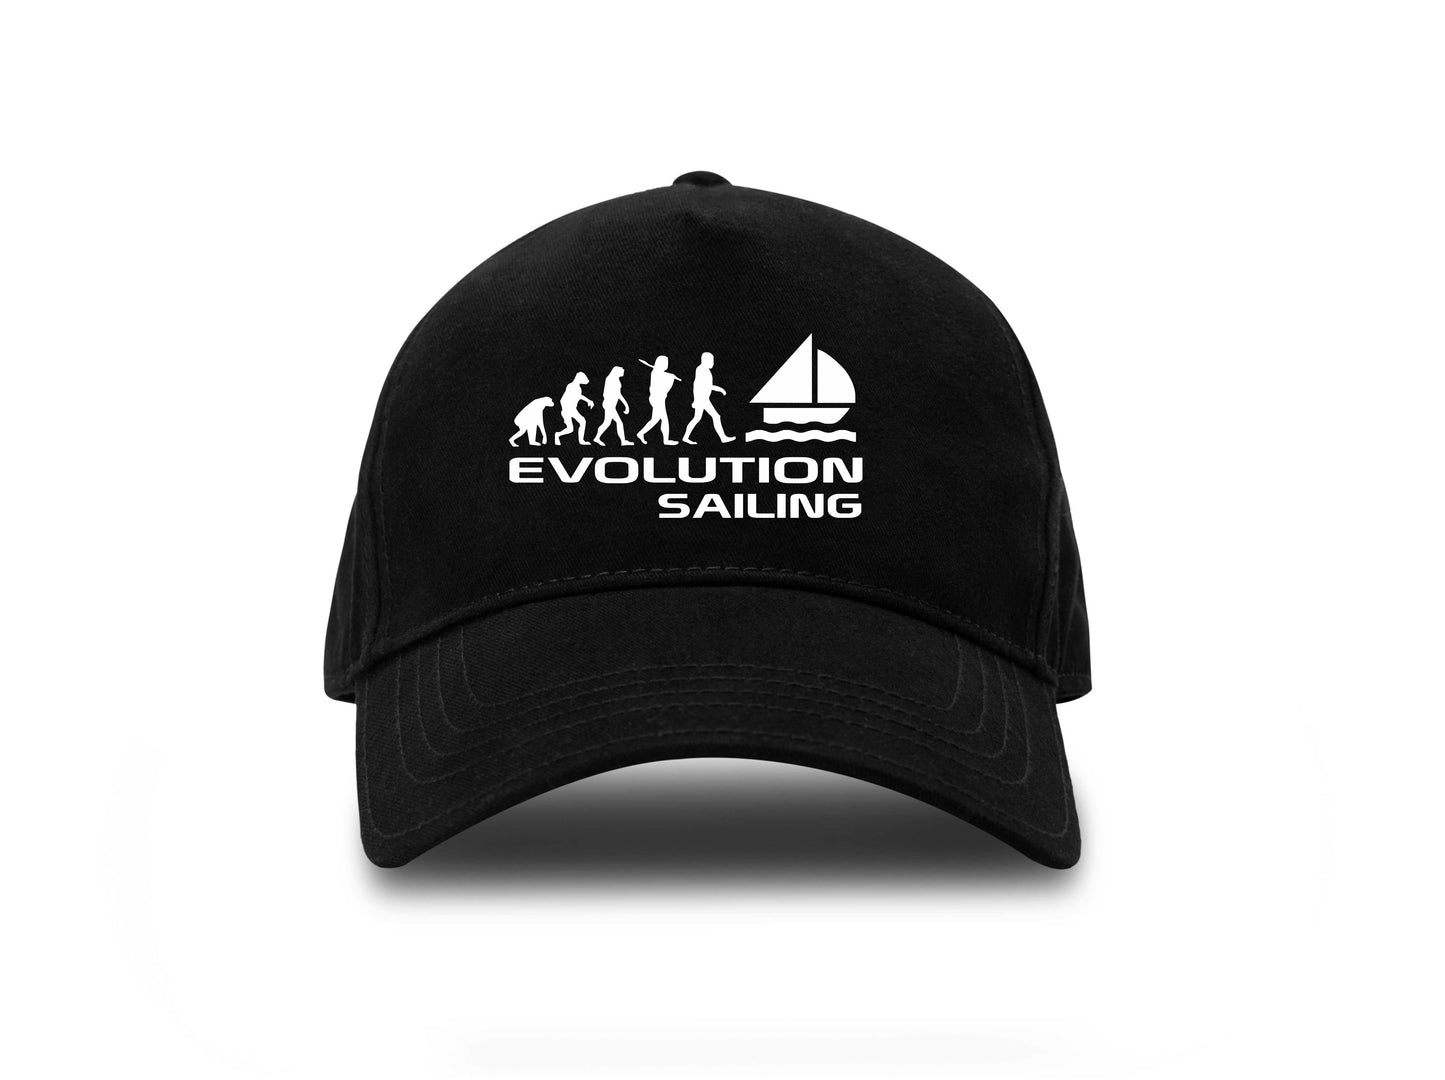 Evolution Of Sailing Baseball Cap Sports Fan Gift For Men & Women